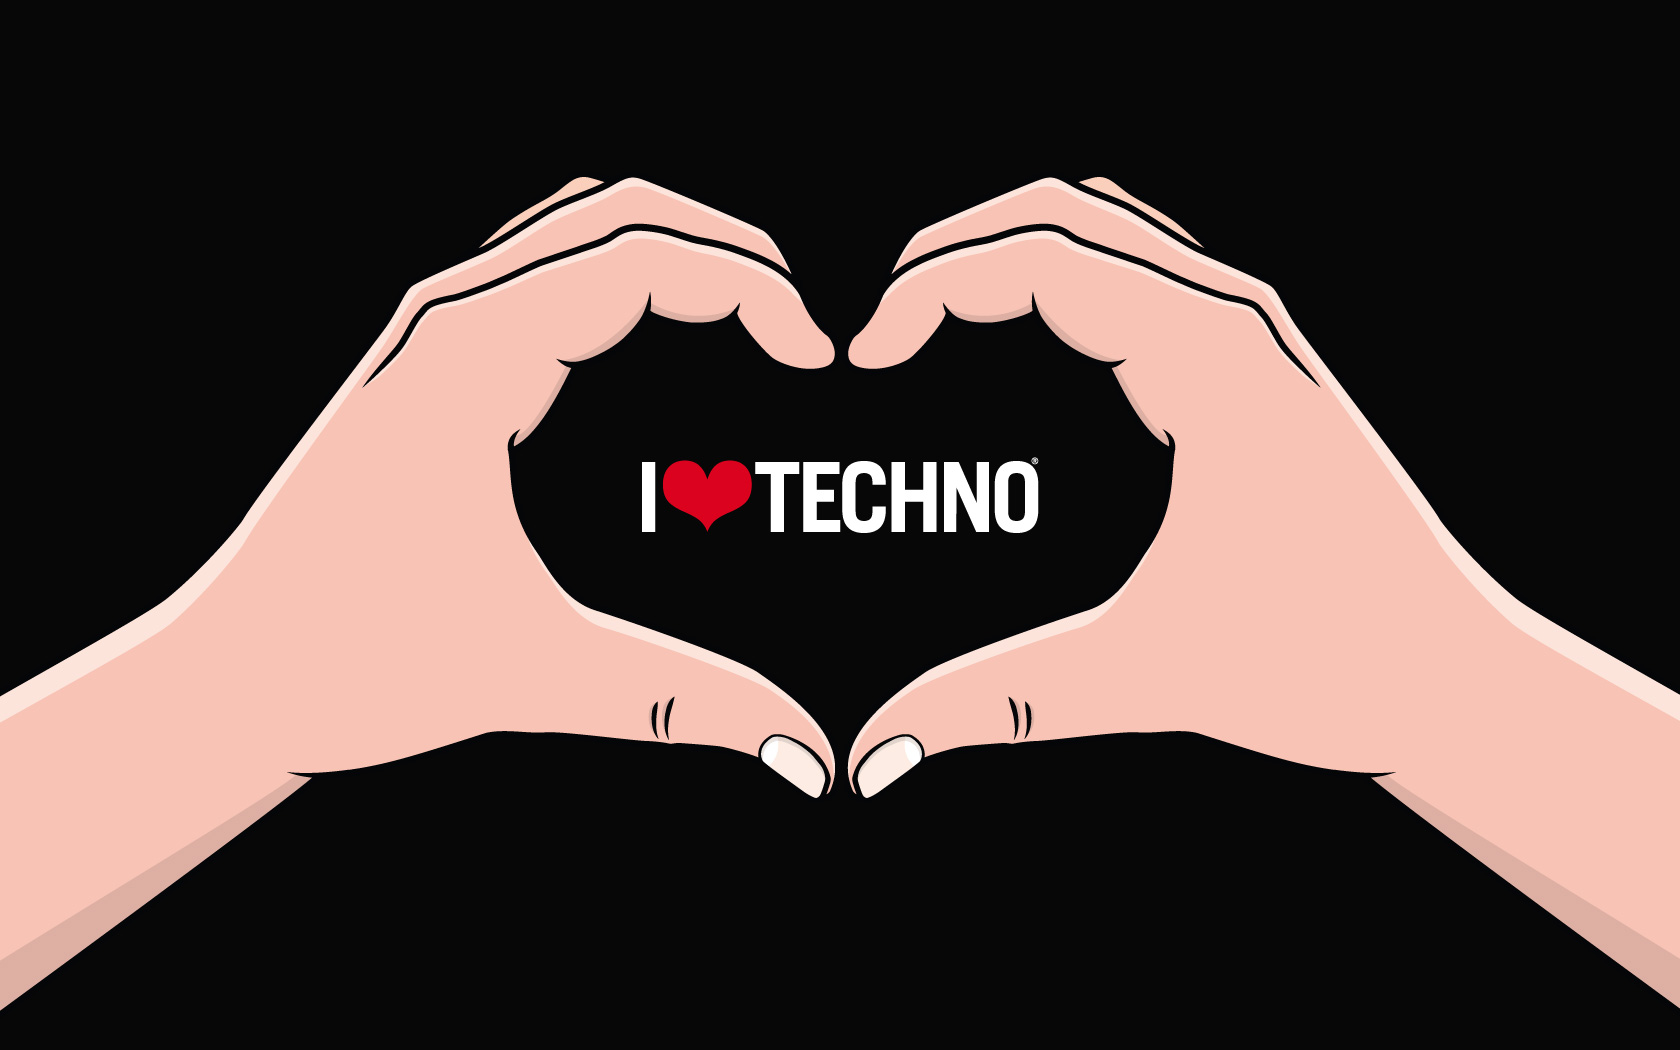 Love Techno Logo Wallpaper I